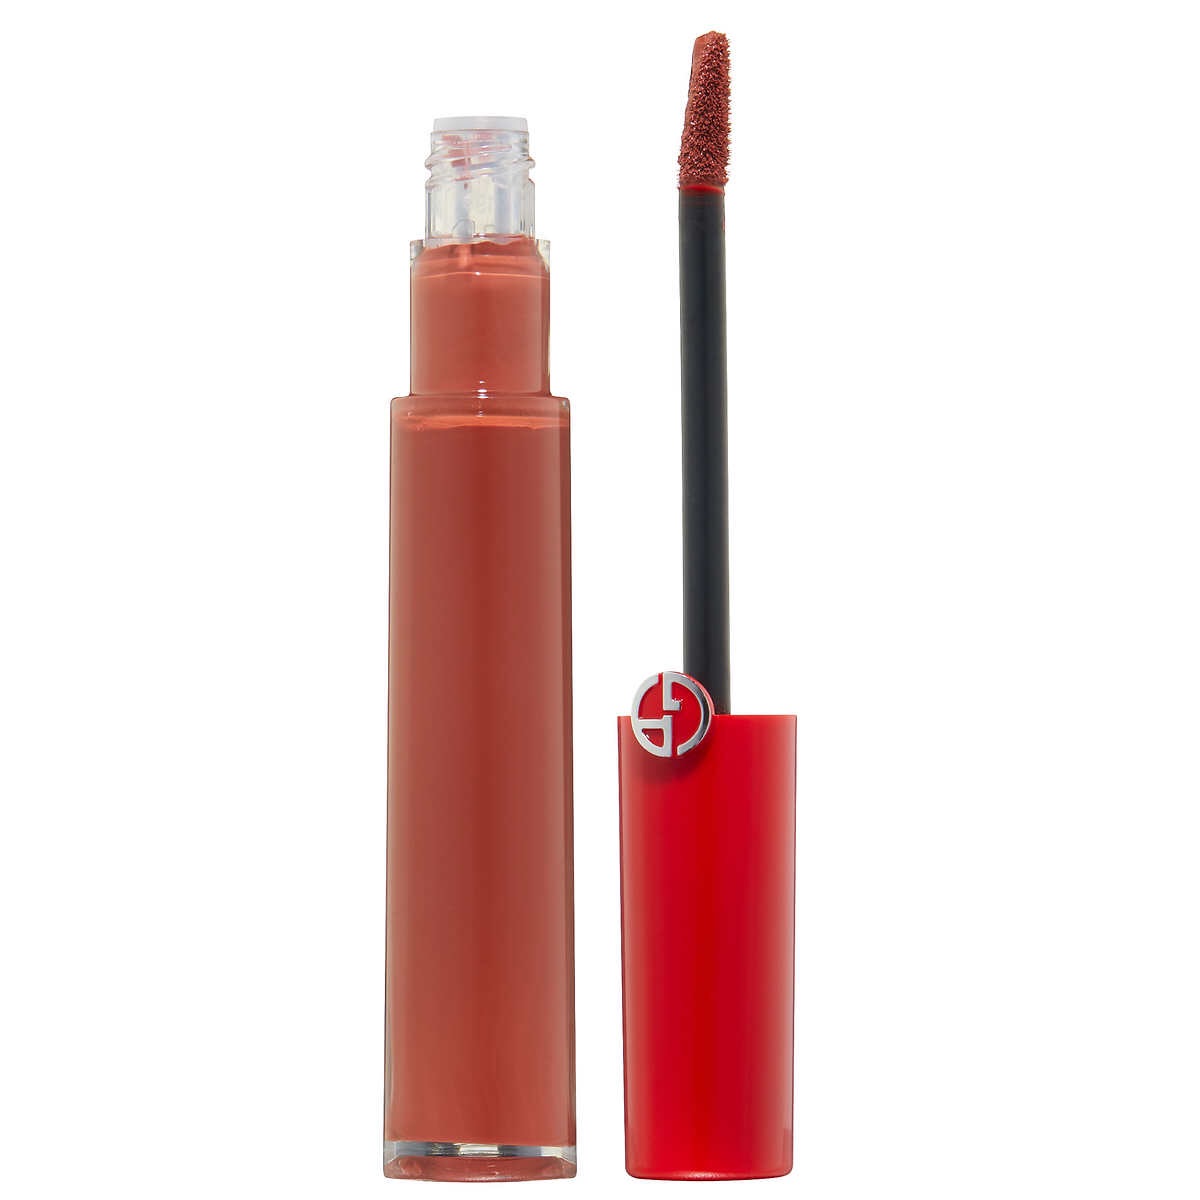 Giorgio Armani Beauty Lip Maestro Liquid Lipstick阿玛尼红管口红